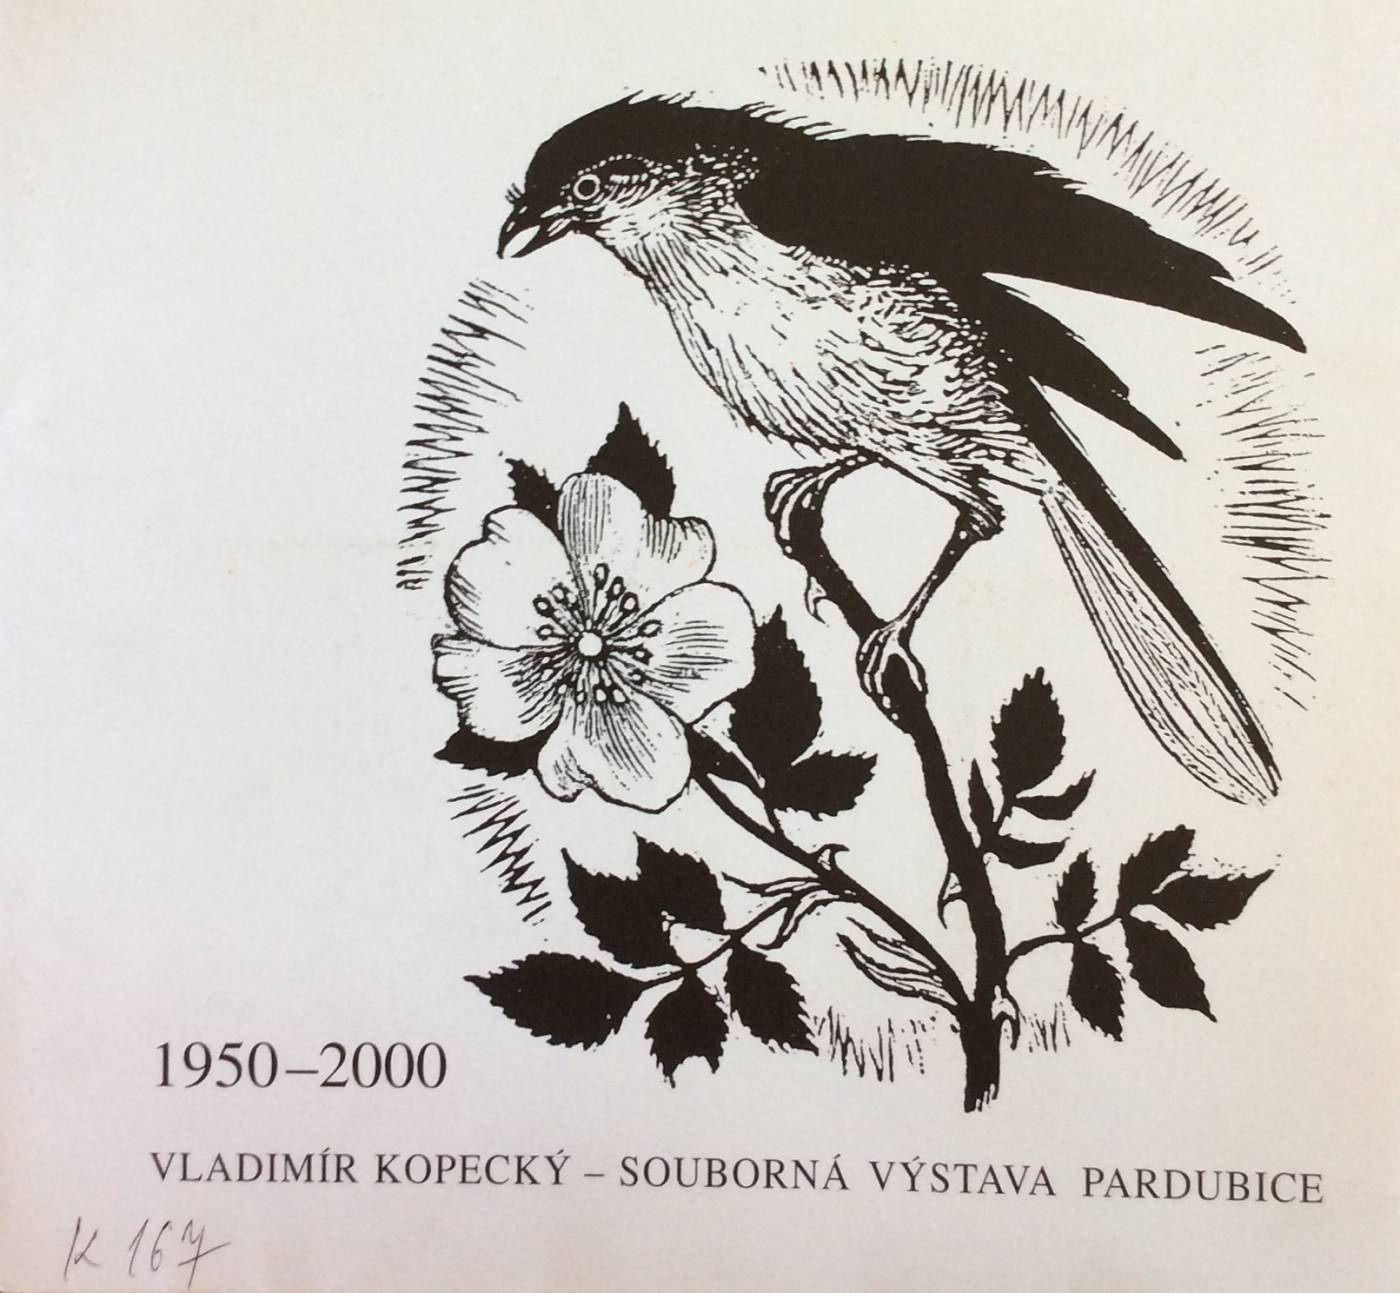 Vladimír Kopecký – souborná výstava tvorby z let 1950 – 2000